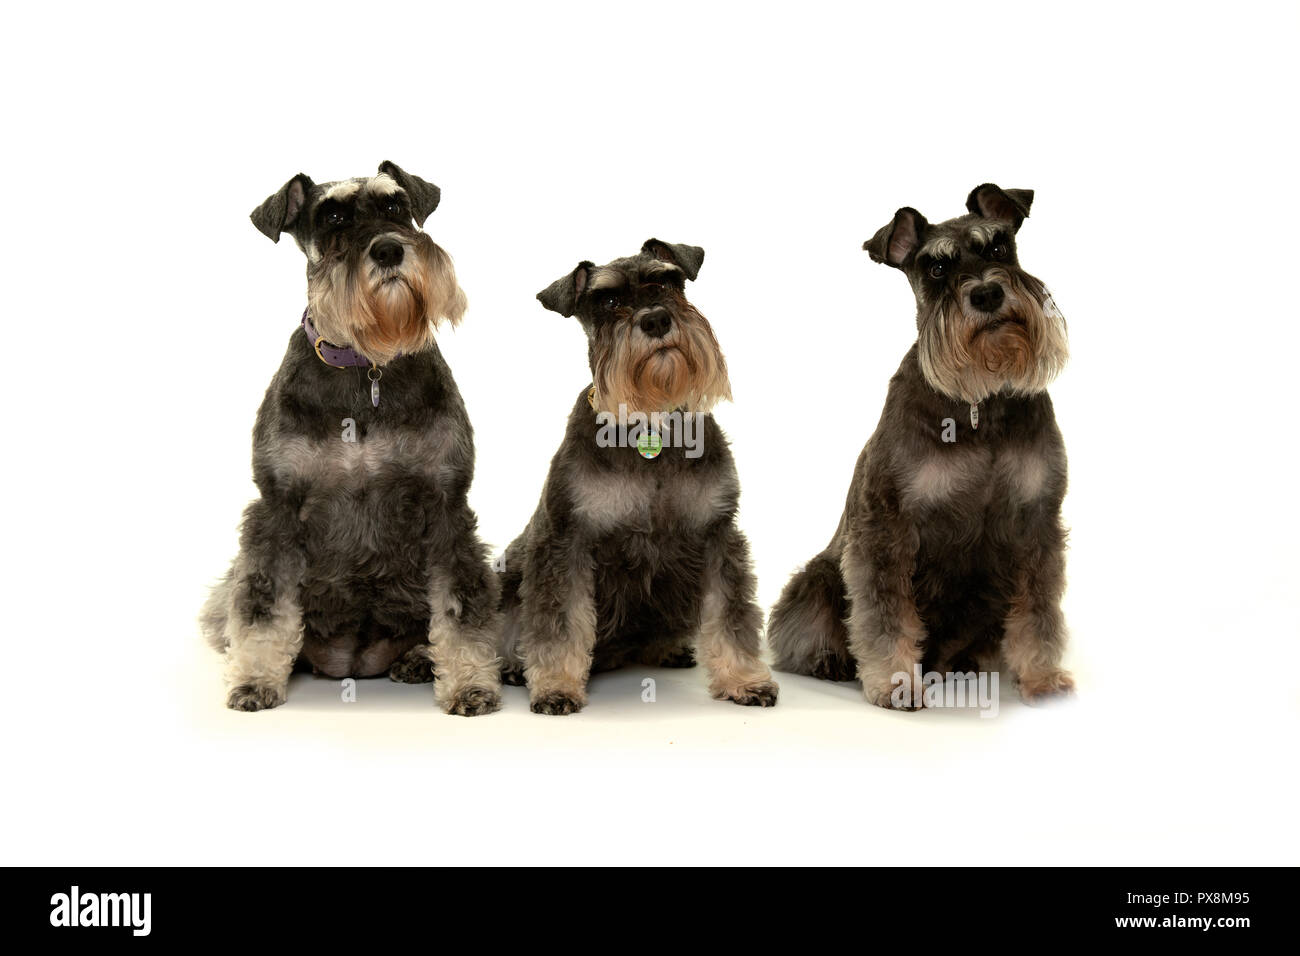 Les chiens schnauzer nain assis sur fond uni looking up Banque D'Images